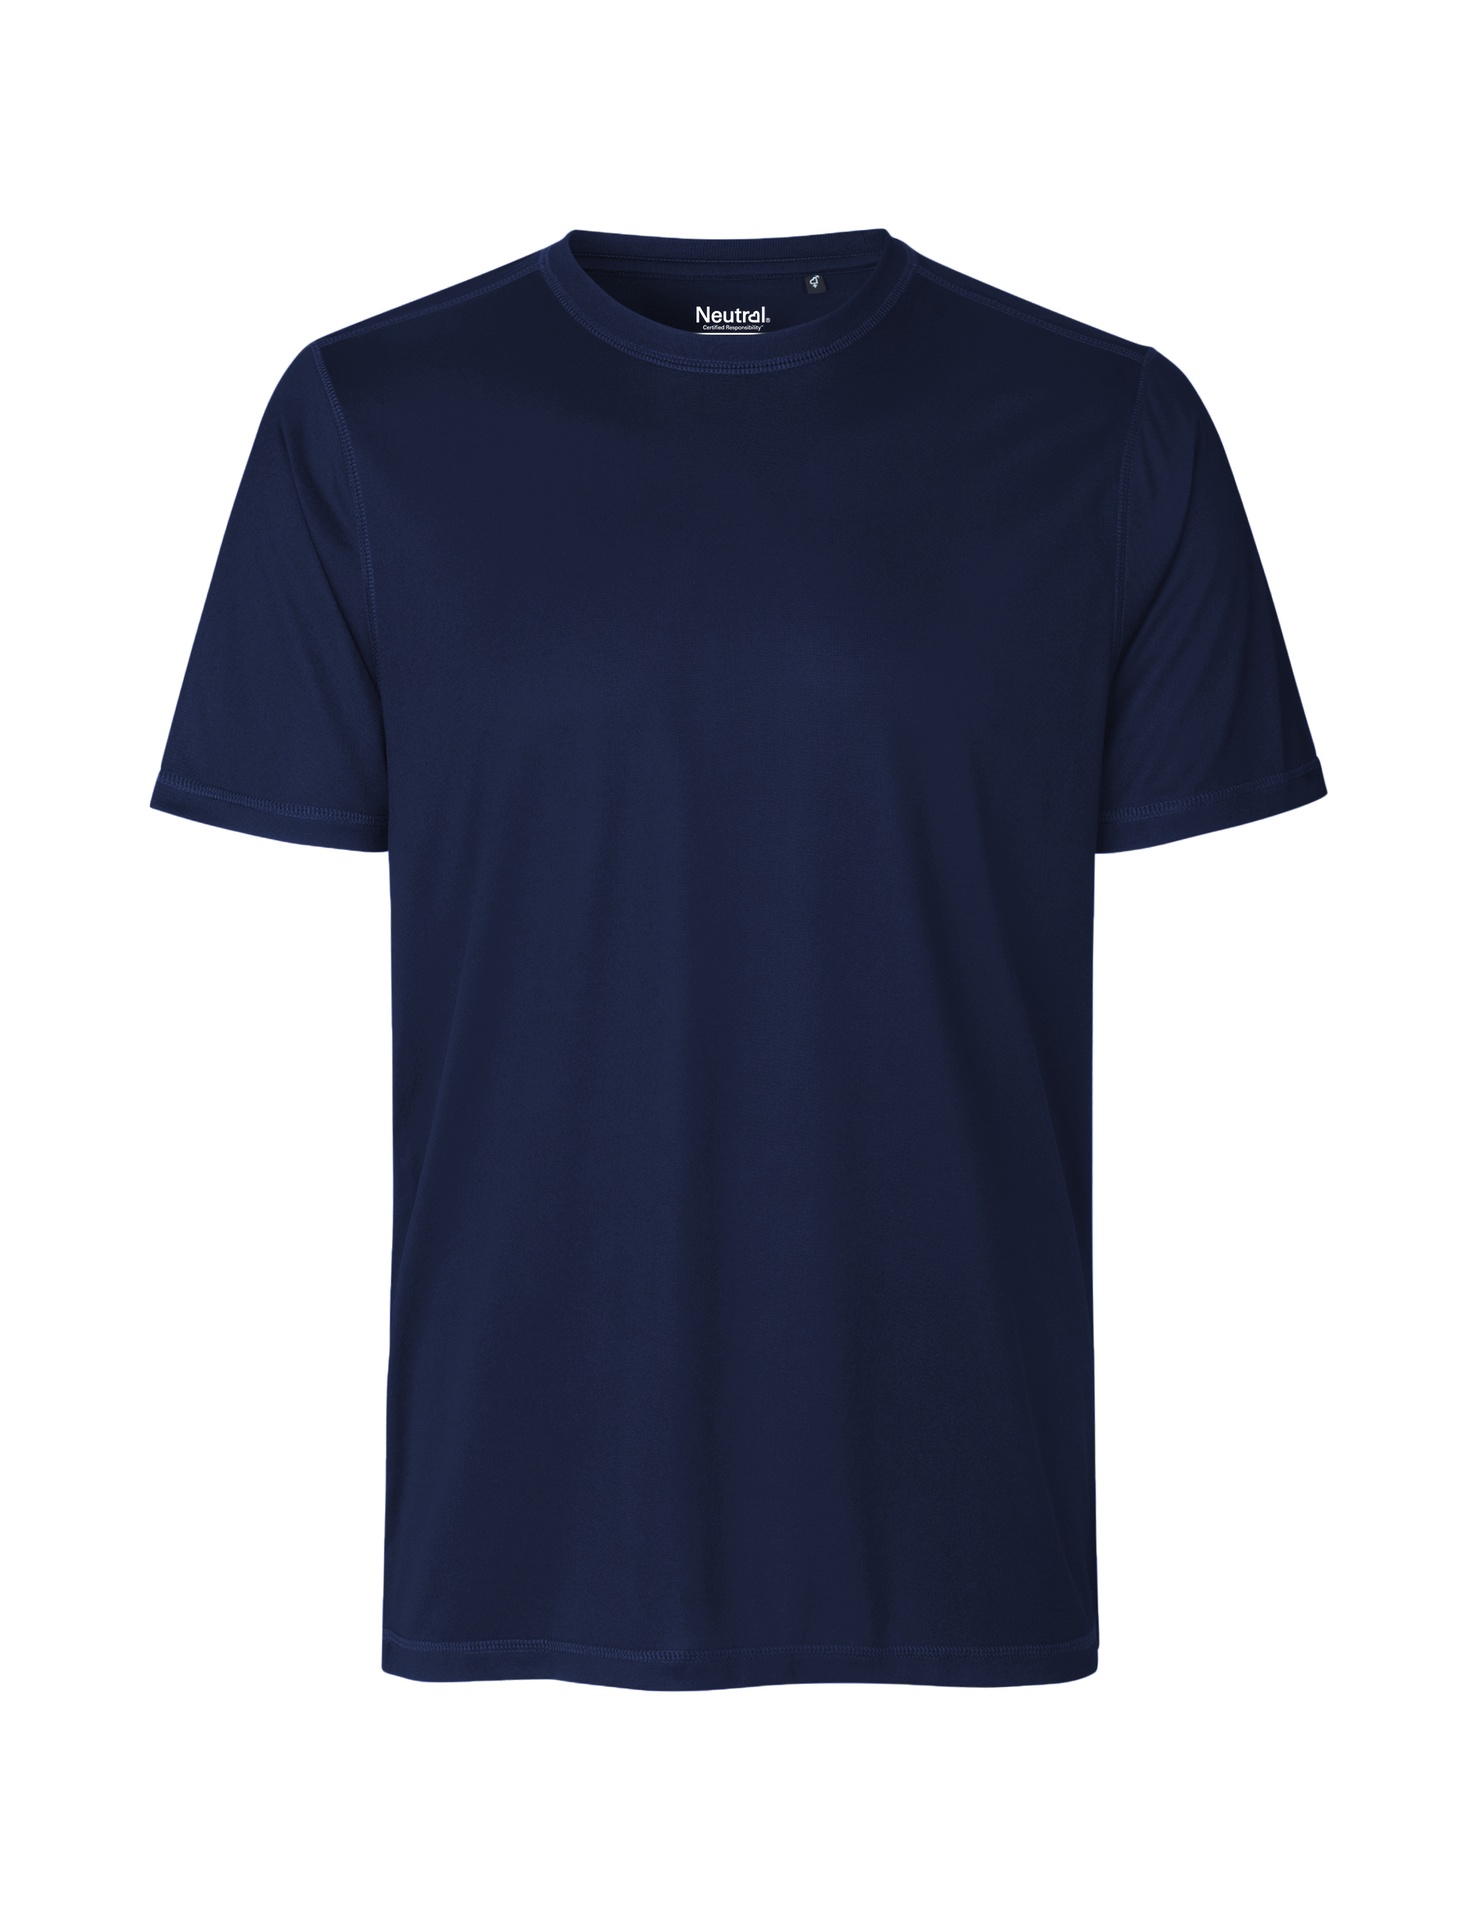 [PR/03765] Recycled Performance T-Shirt (Navy 04, 3XL)